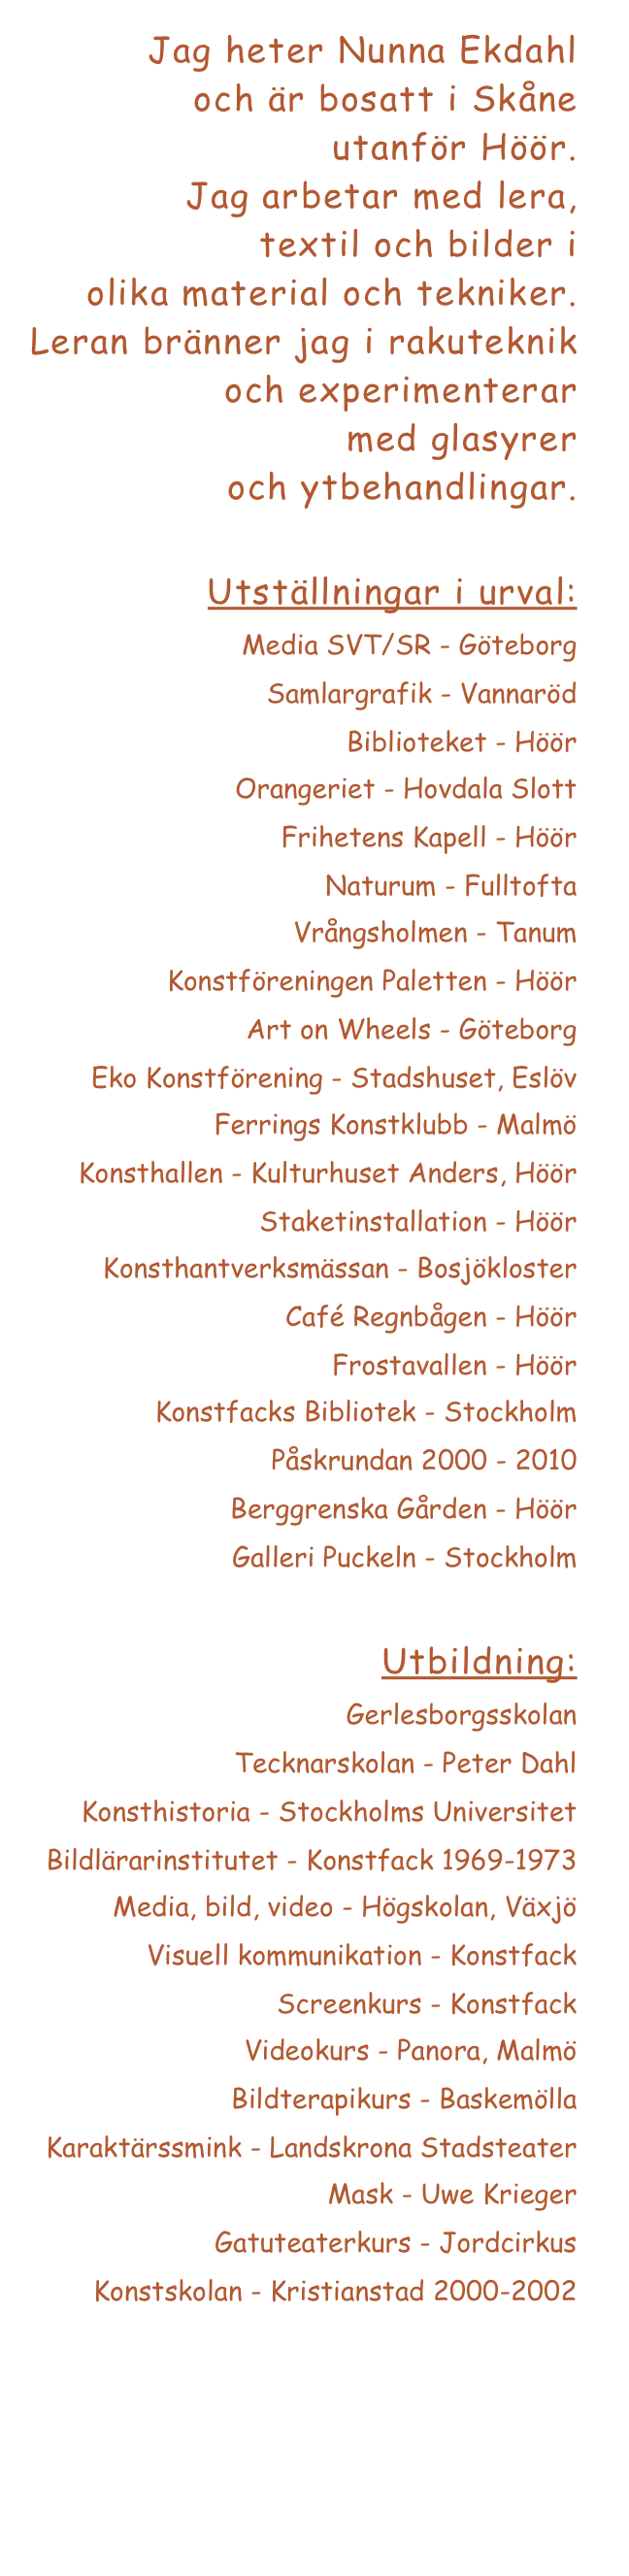 Jag heter Nunna Ekdahl
och är bosatt i Skåne 
utanför Höör. 
Jag arbetar med lera, 
textil och bilder i 
olika material och tekniker. 
Leran bränner jag i rakuteknik och experimenterar 
med glasyrer 
och ytbehandlingar.

Utställningar i urval:
Media SVT/SR - Göteborg
Samlargrafik - Vannaröd
Biblioteket - Höör
Orangeriet - Hovdala Slott
Frihetens Kapell - Höör
Naturum - Fulltofta
Vrångsholmen - Tanum
Konstföreningen Paletten - Höör
Art on Wheels - Göteborg
Eko Konstförening - Stadshuset, Eslöv
Ferrings Konstklubb - Malmö
Konsthallen - Kulturhuset Anders, Höör
Staketinstallation - Höör
Konsthantverksmässan - Bosjökloster
Café Regnbågen - Höör
Frostavallen - Höör
Konstfacks Bibliotek - Stockholm
Påskrundan 2000 - 2010 
Berggrenska Gården - Höör
Galleri Puckeln - Stockholm

Utbildning:
Gerlesborgsskolan
Tecknarskolan - Peter Dahl
Konsthistoria - Stockholms Universitet
Bildlärarinstitutet - Konstfack 1969-1973
Media, bild, video - Högskolan, Växjö
Visuell kommunikation - Konstfack
Screenkurs - Konstfack
Videokurs - Panora, Malmö
Bildterapikurs - Baskemölla
Karaktärssmink - Landskrona Stadsteater
Mask - Uwe Krieger
Gatuteaterkurs - Jordcirkus
Konstskolan - Kristianstad 2000-2002
